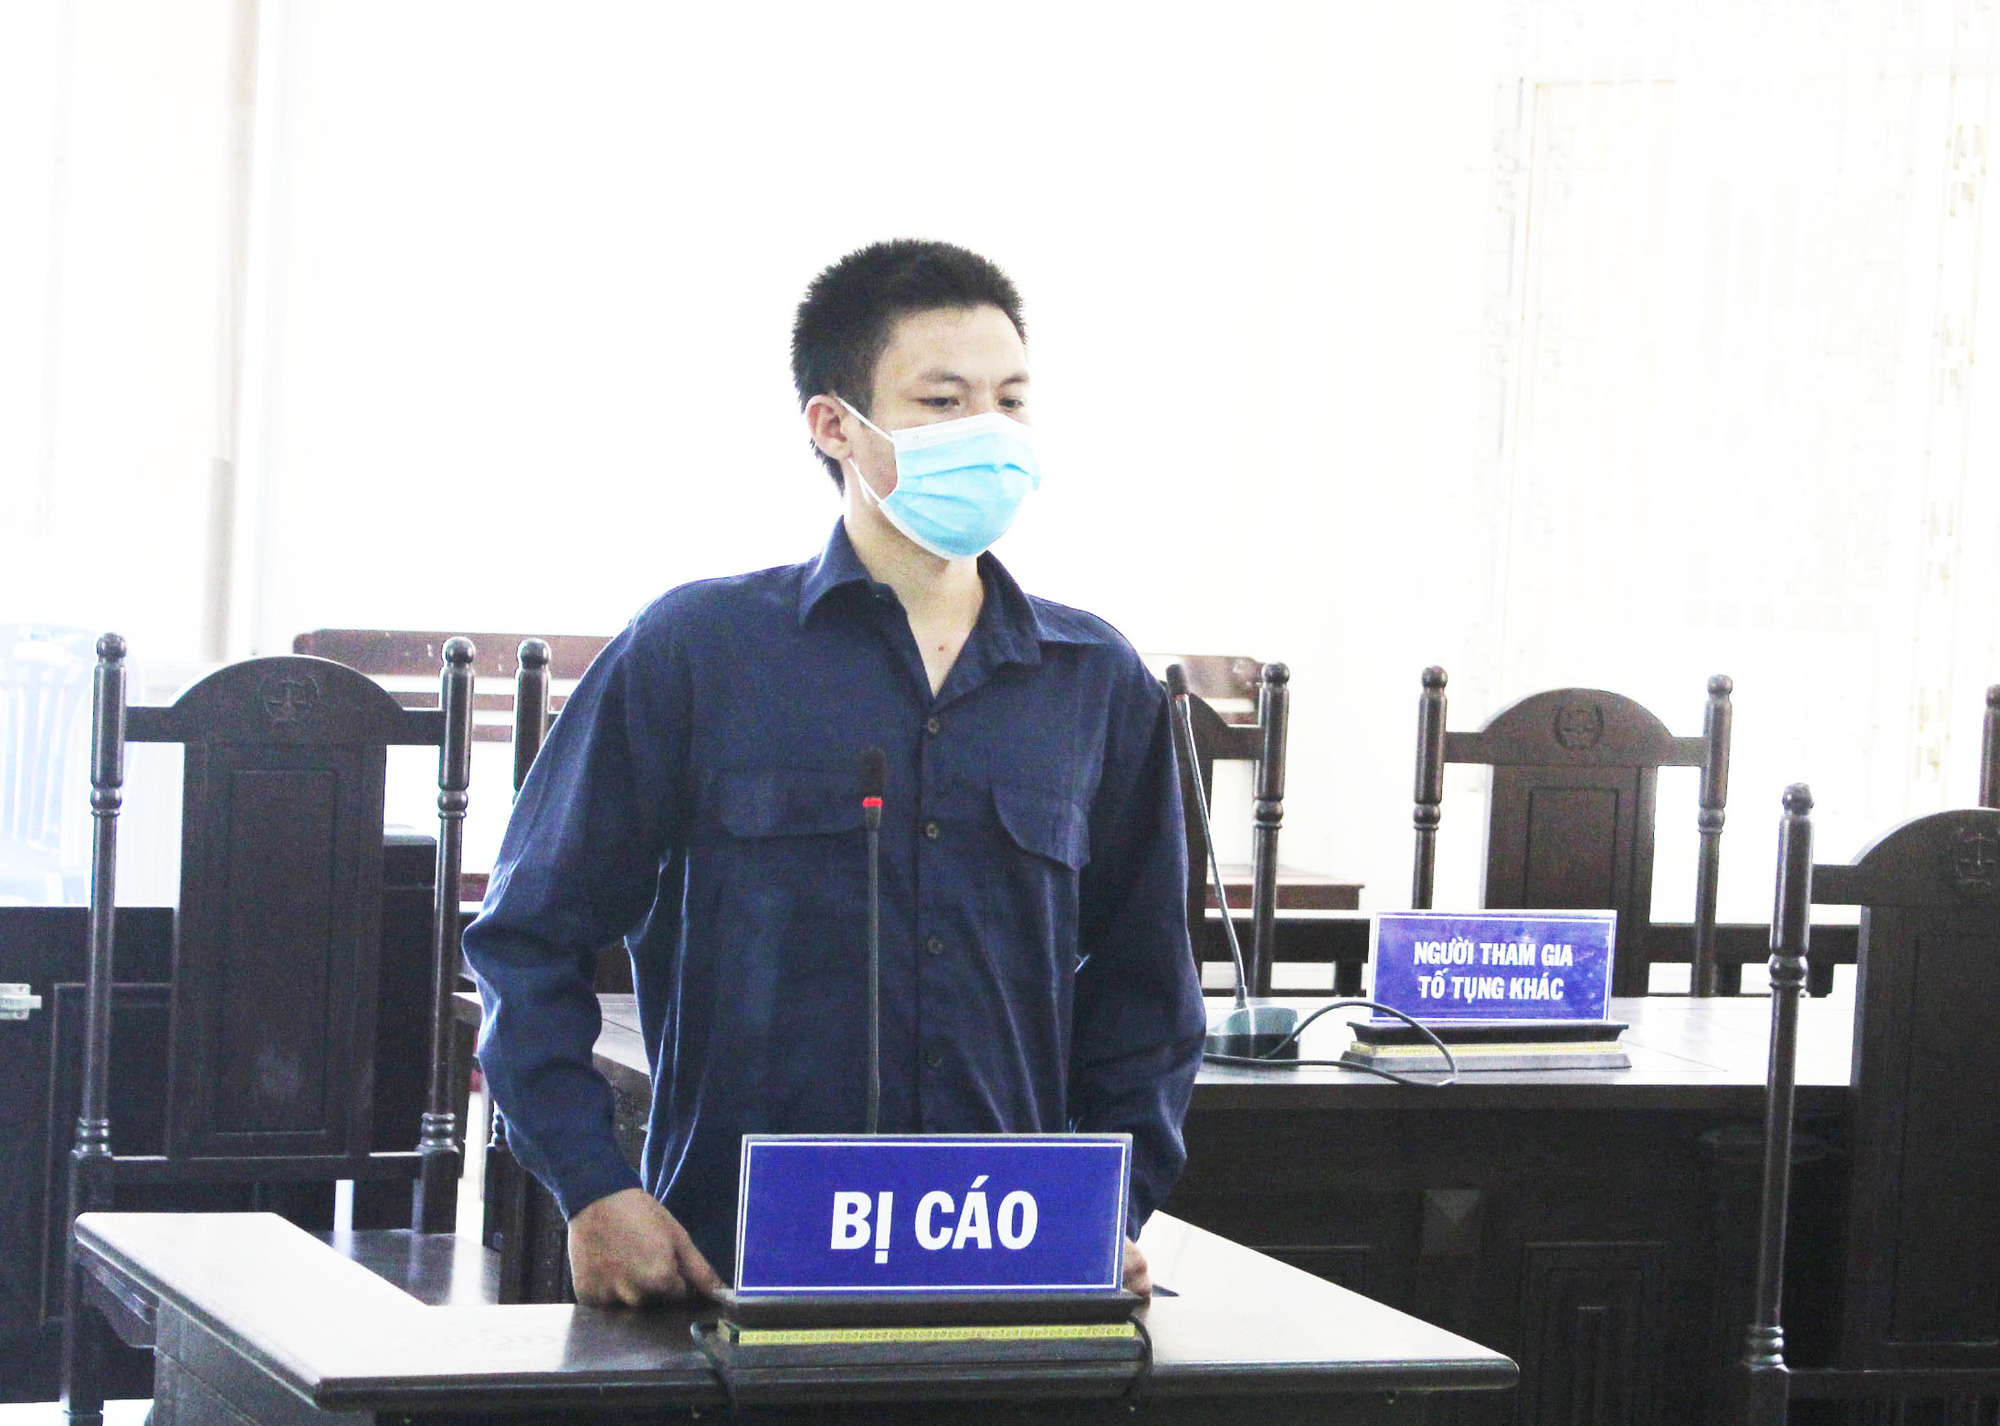 Phú Yên: Thanh niên lãnh 9 tháng tù giam vì chống người thi hành công vụ tại chốt phong tỏa - Ảnh 1.